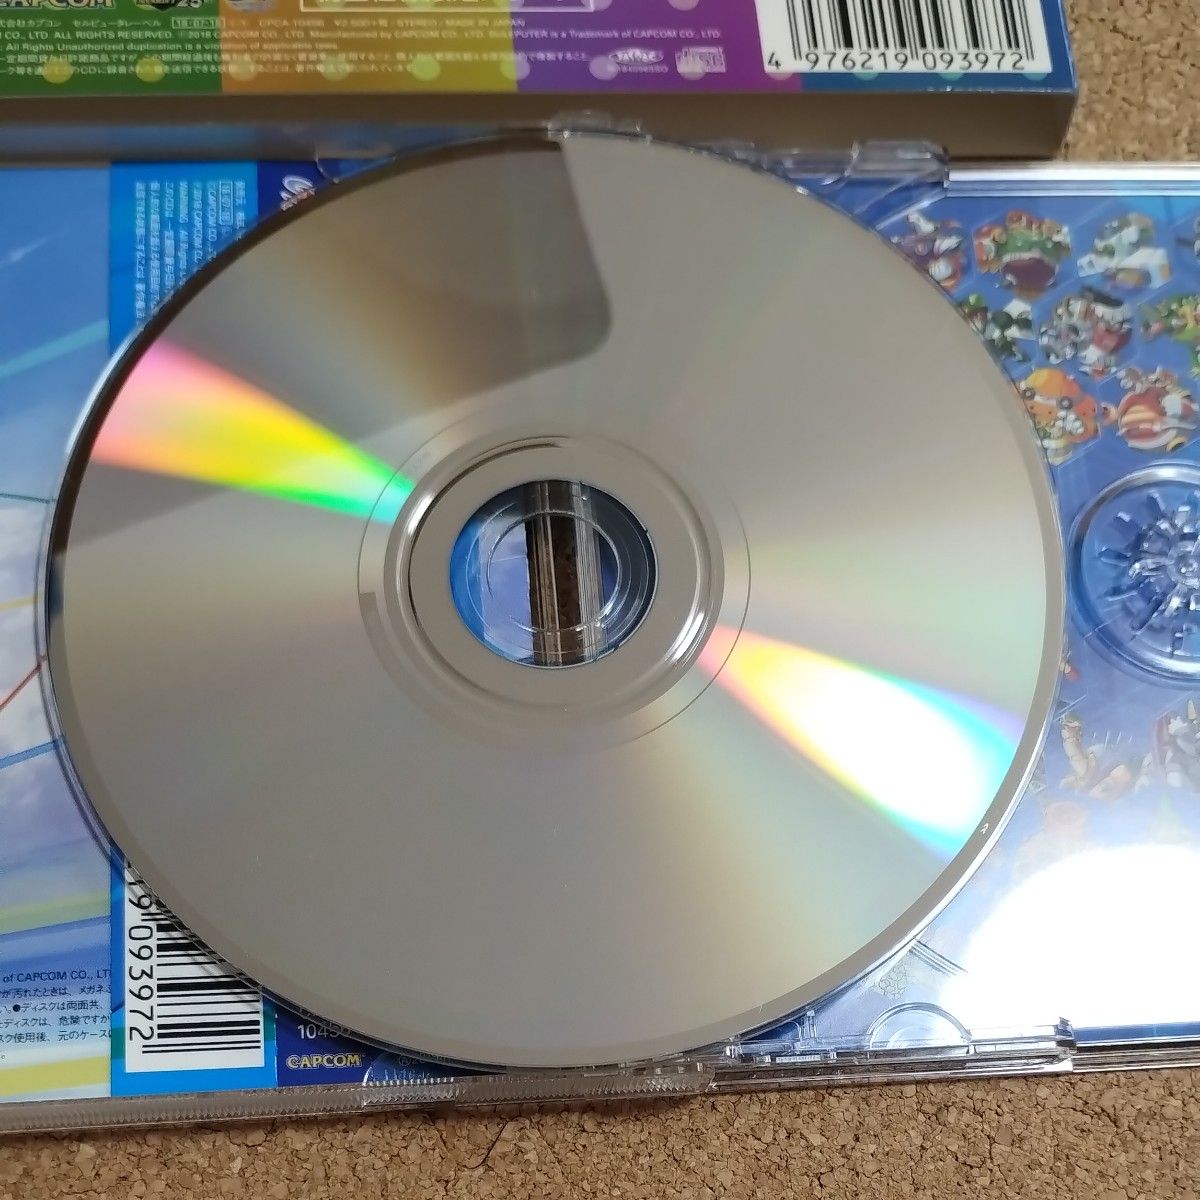 ロックマンX アニバーサリーコレクション サウンドトラック CD (ゲームミュージック) ERICA